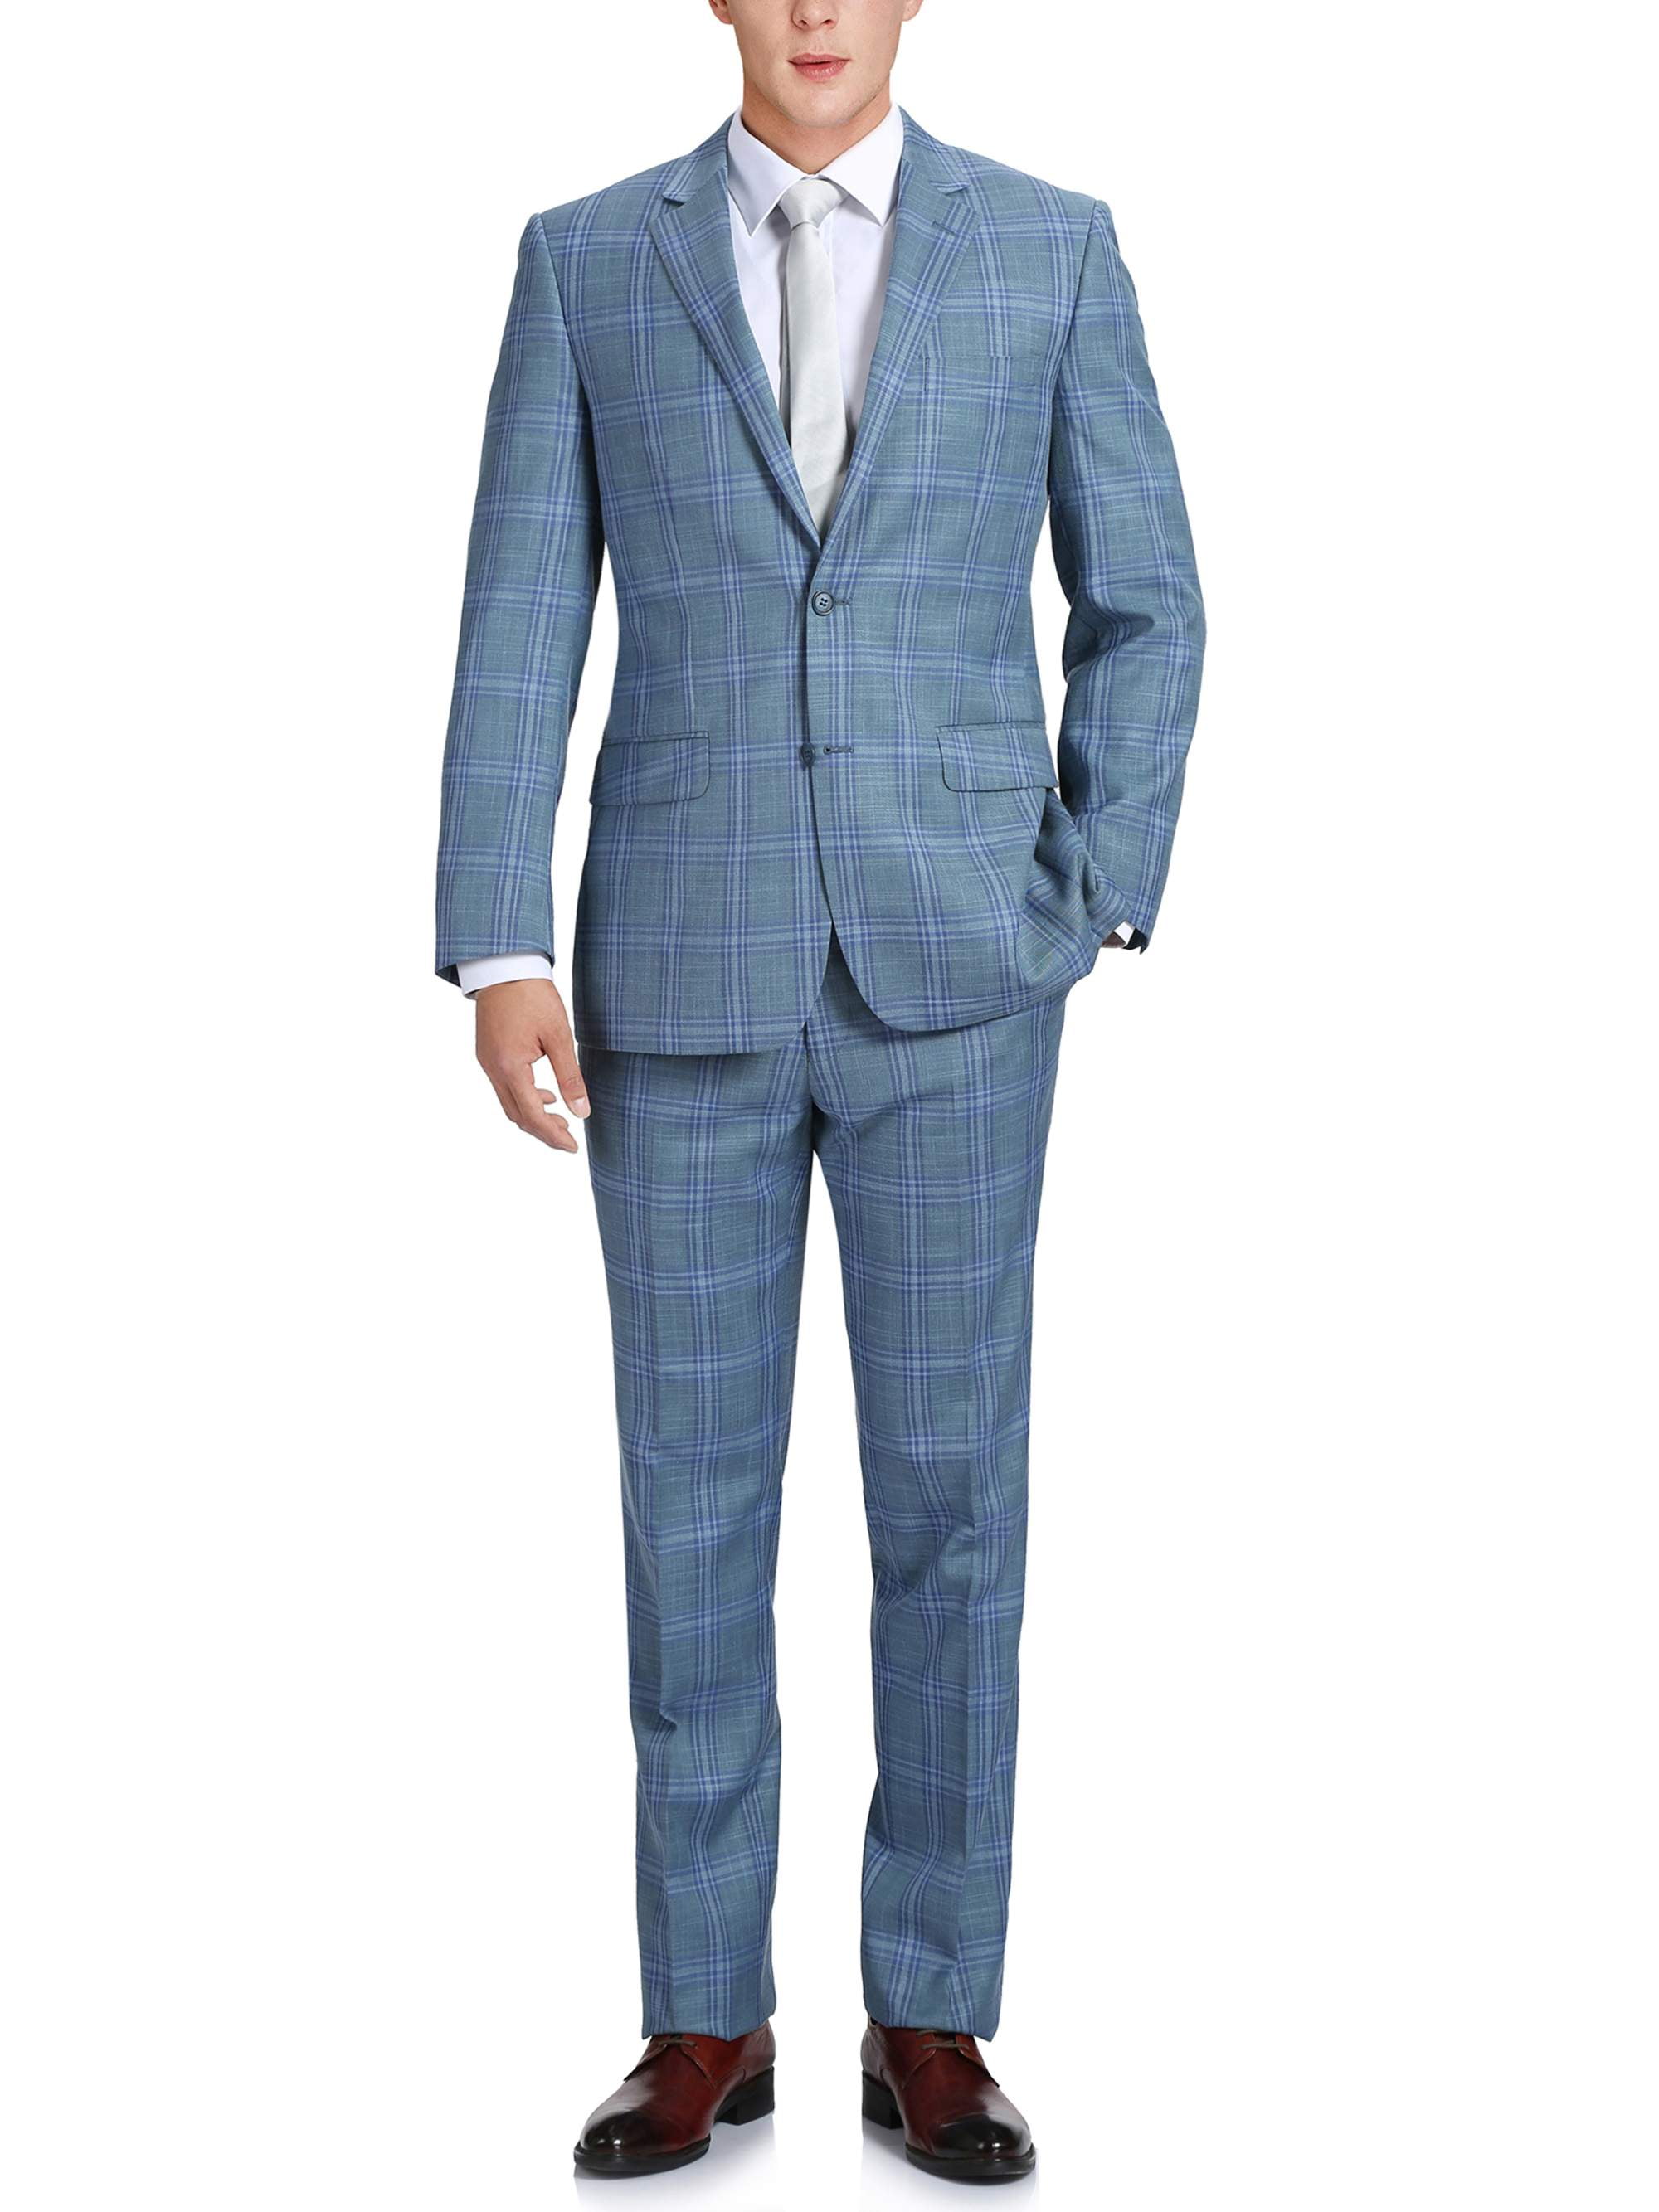 iClosam Mens Waistcoats Classic Paisley Vest Suit Set Slim Fit Formal Wedding Business Vest